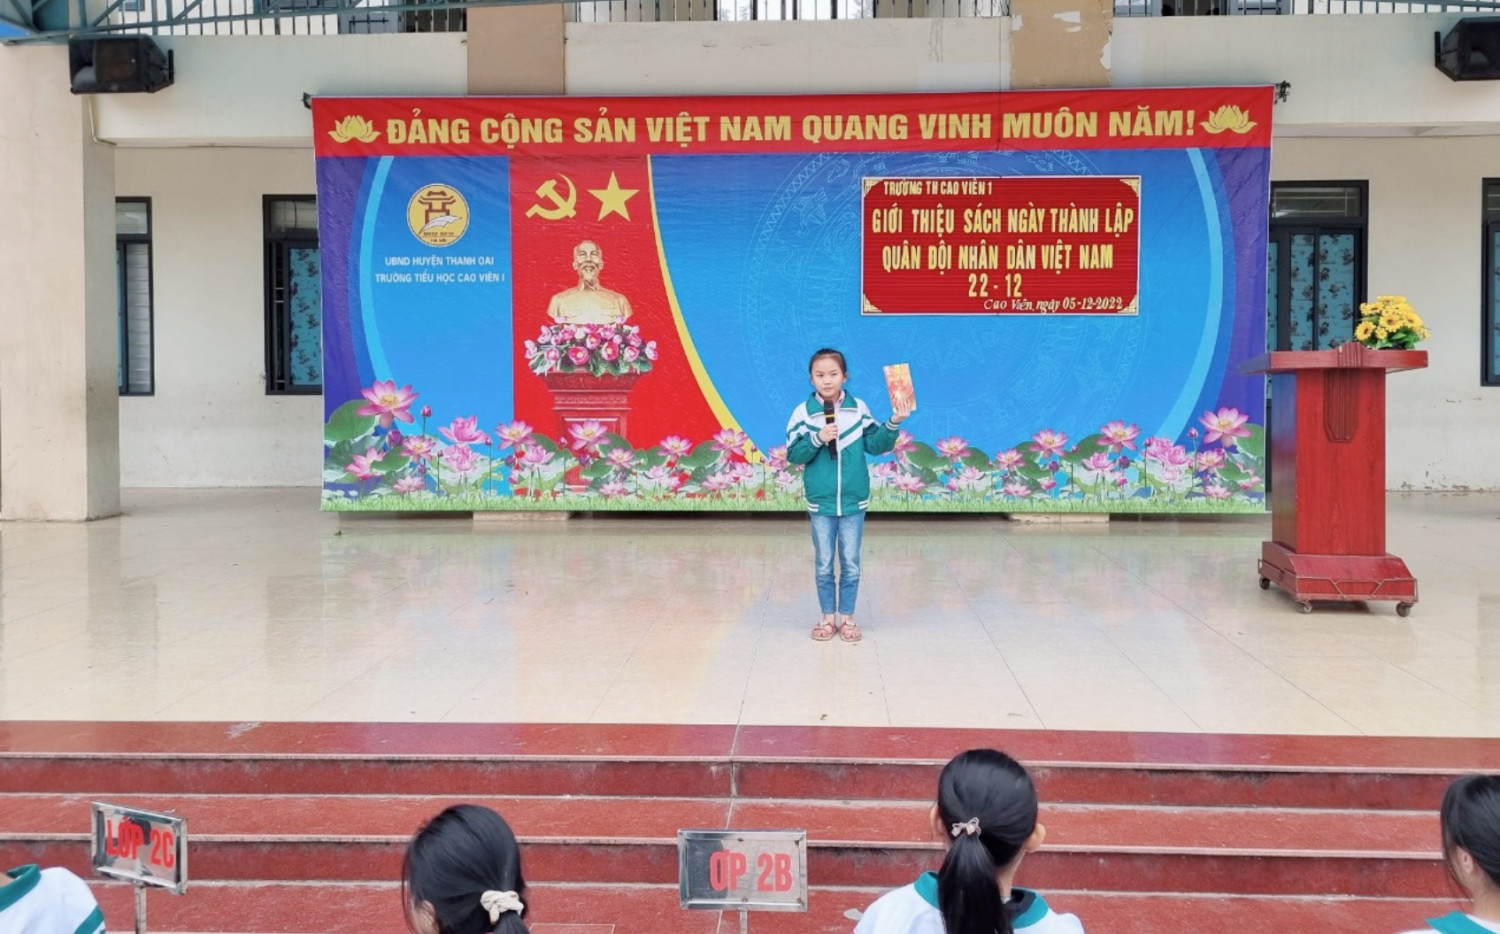 Liên đội trường tiểu học Cao Viên I phối hợp với đoàn Thanh niên tổ chức tuyên truyền ngày 22/12